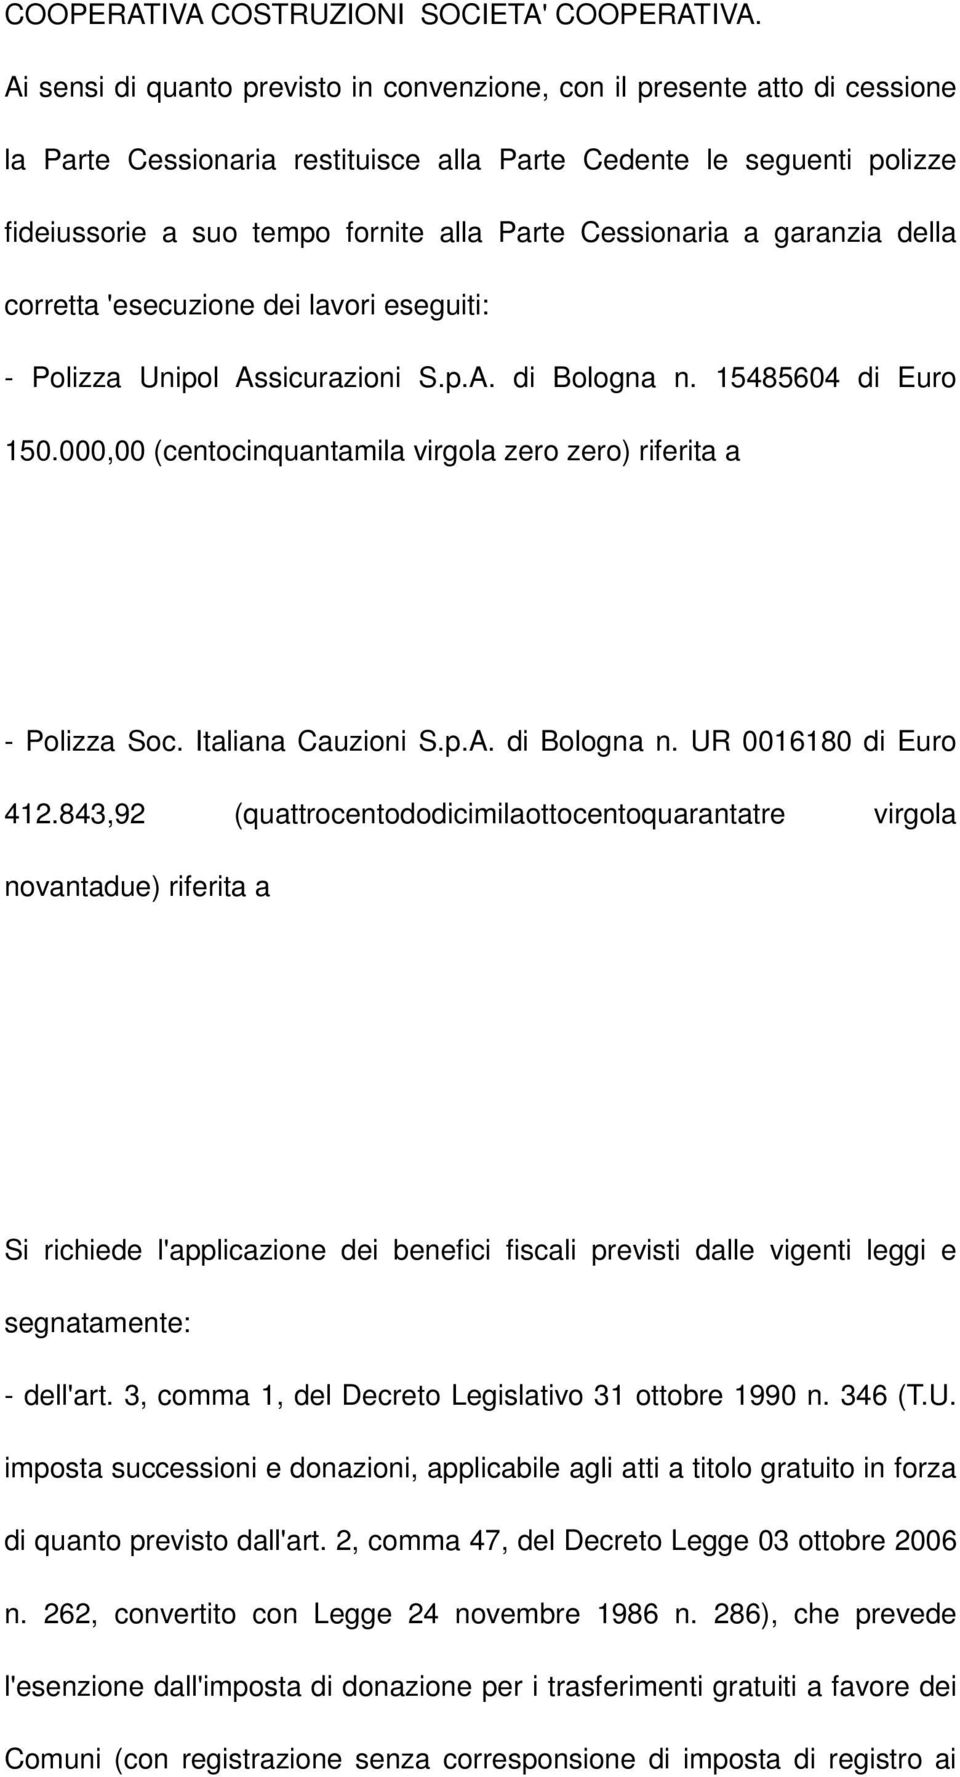 Cessionaria a garanzia della corretta 'esecuzione dei lavori eseguiti: - Polizza Unipol Assicurazioni S.p.A. di Bologna n. 15485604 di Euro 150.